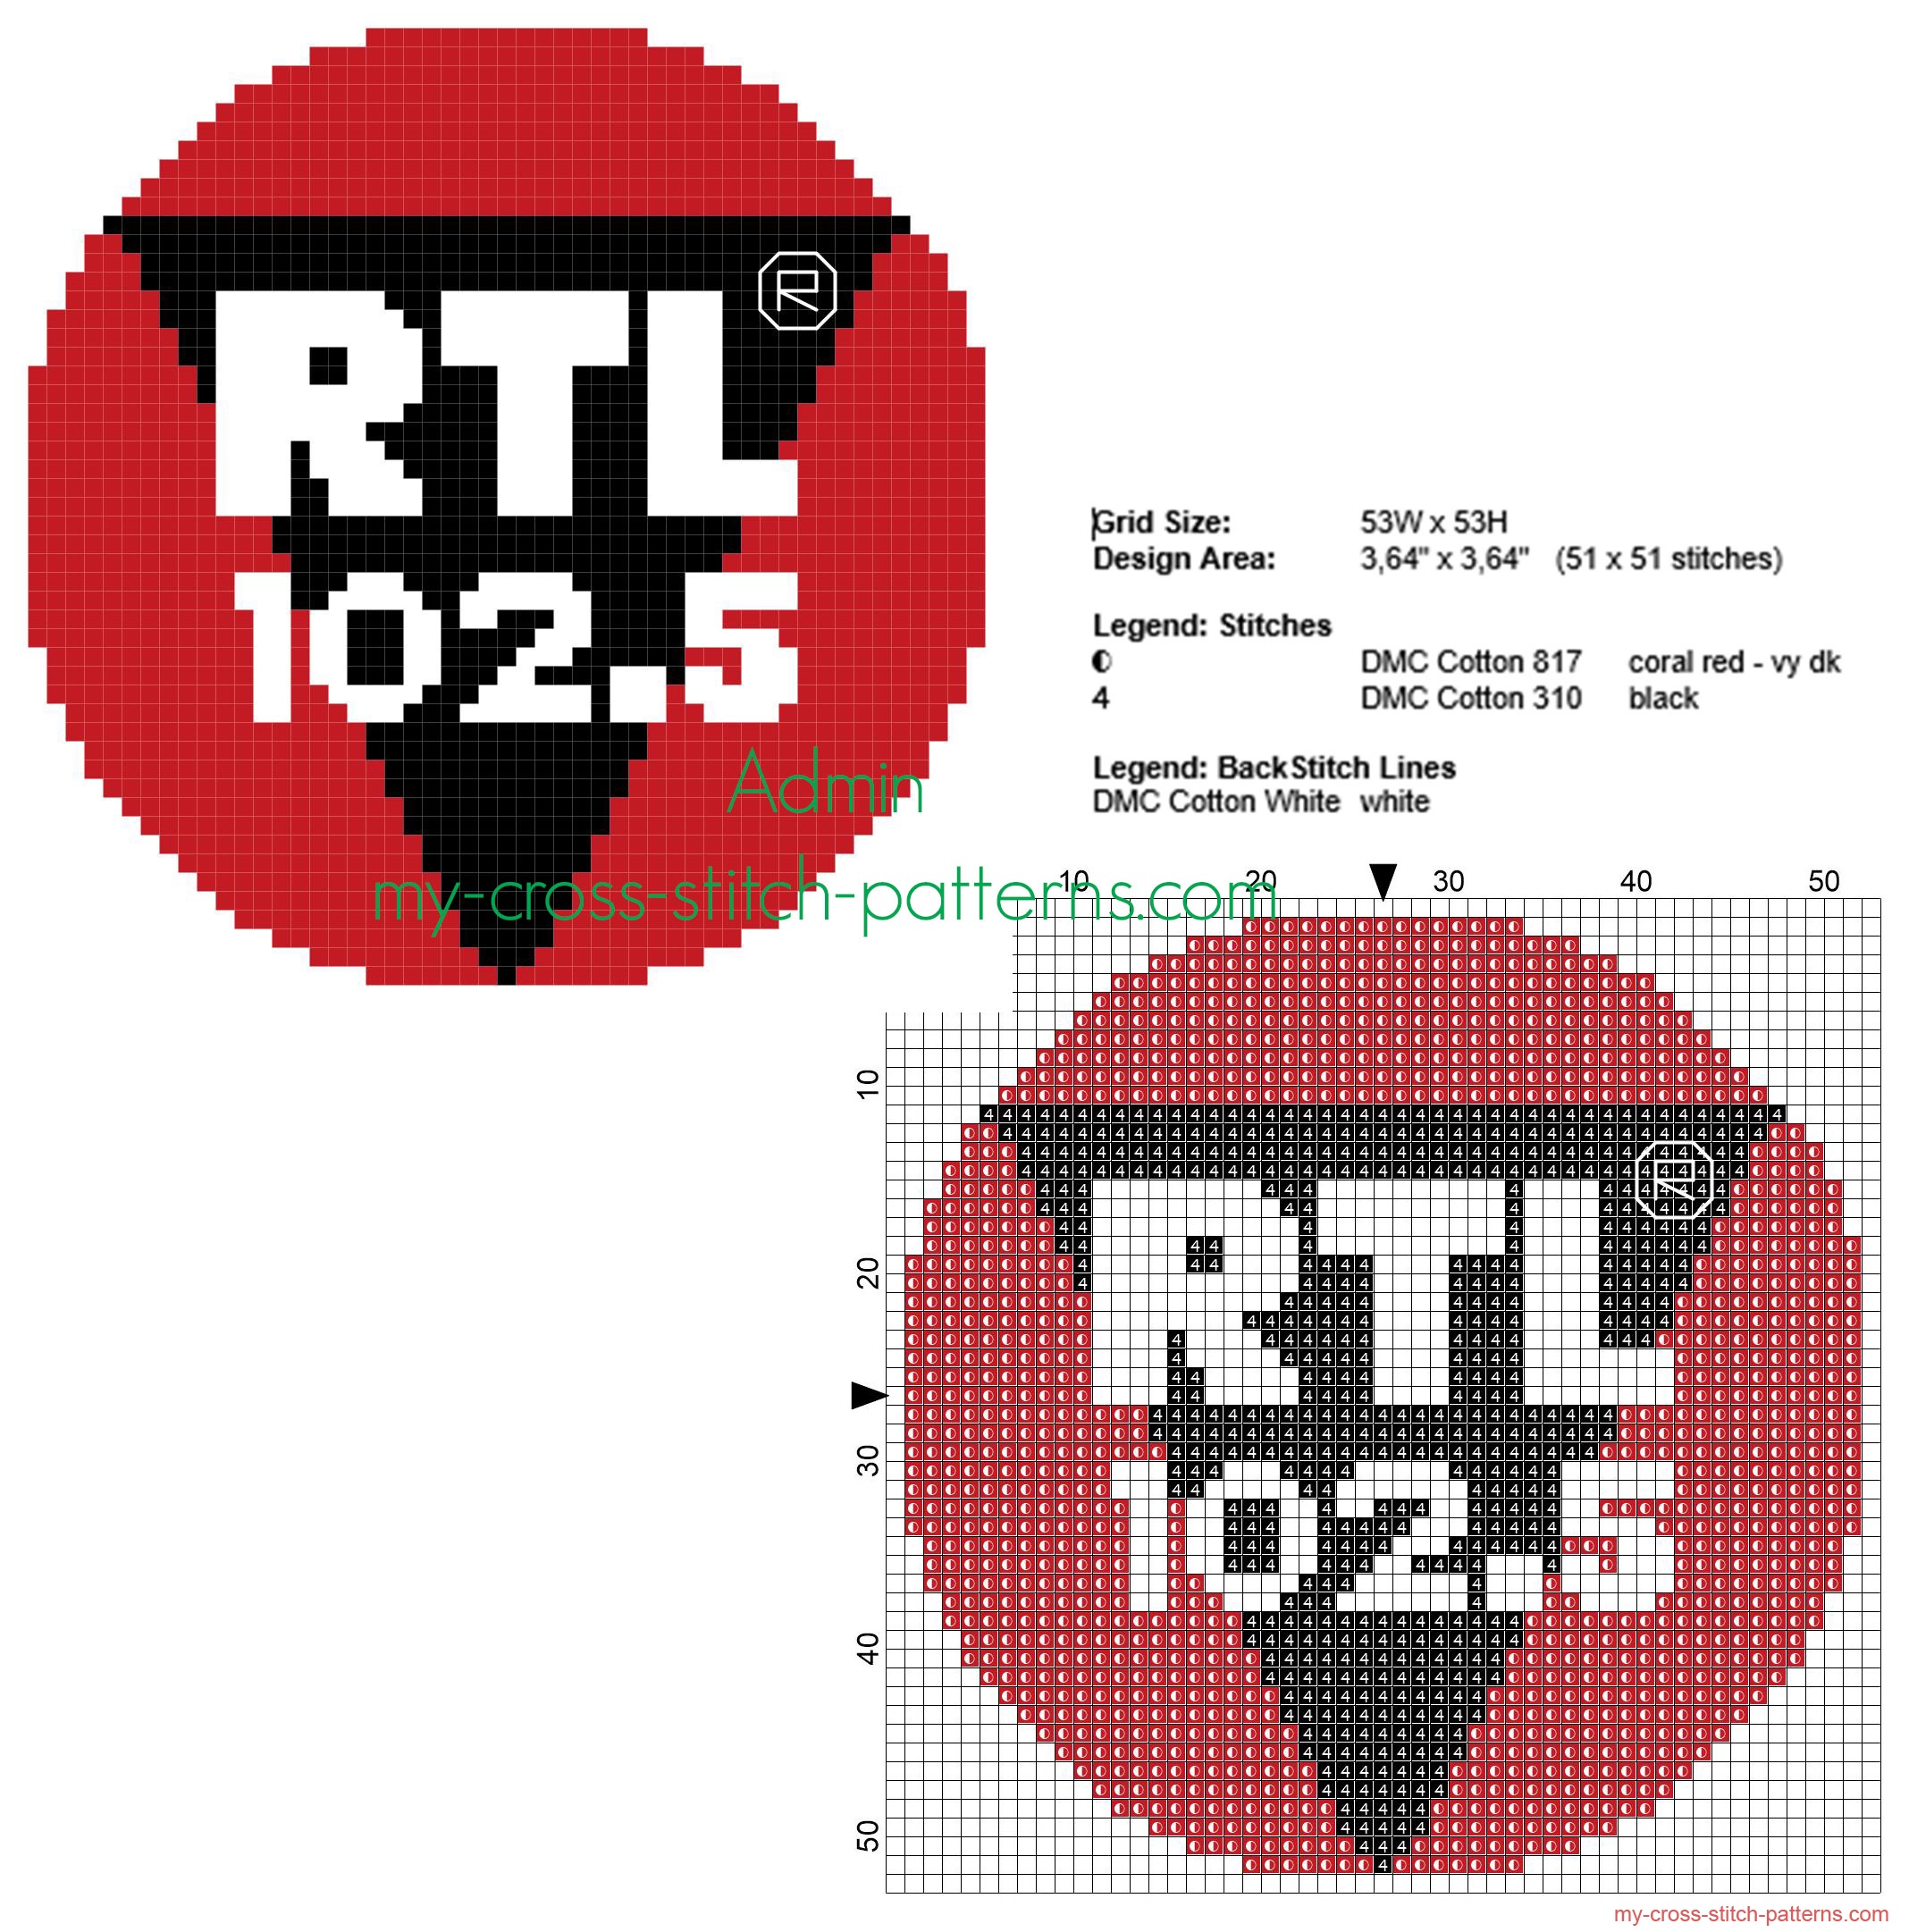 rtl_102_5_radio_logo_free_cross_stitch_pattern_small_size_50_stitches